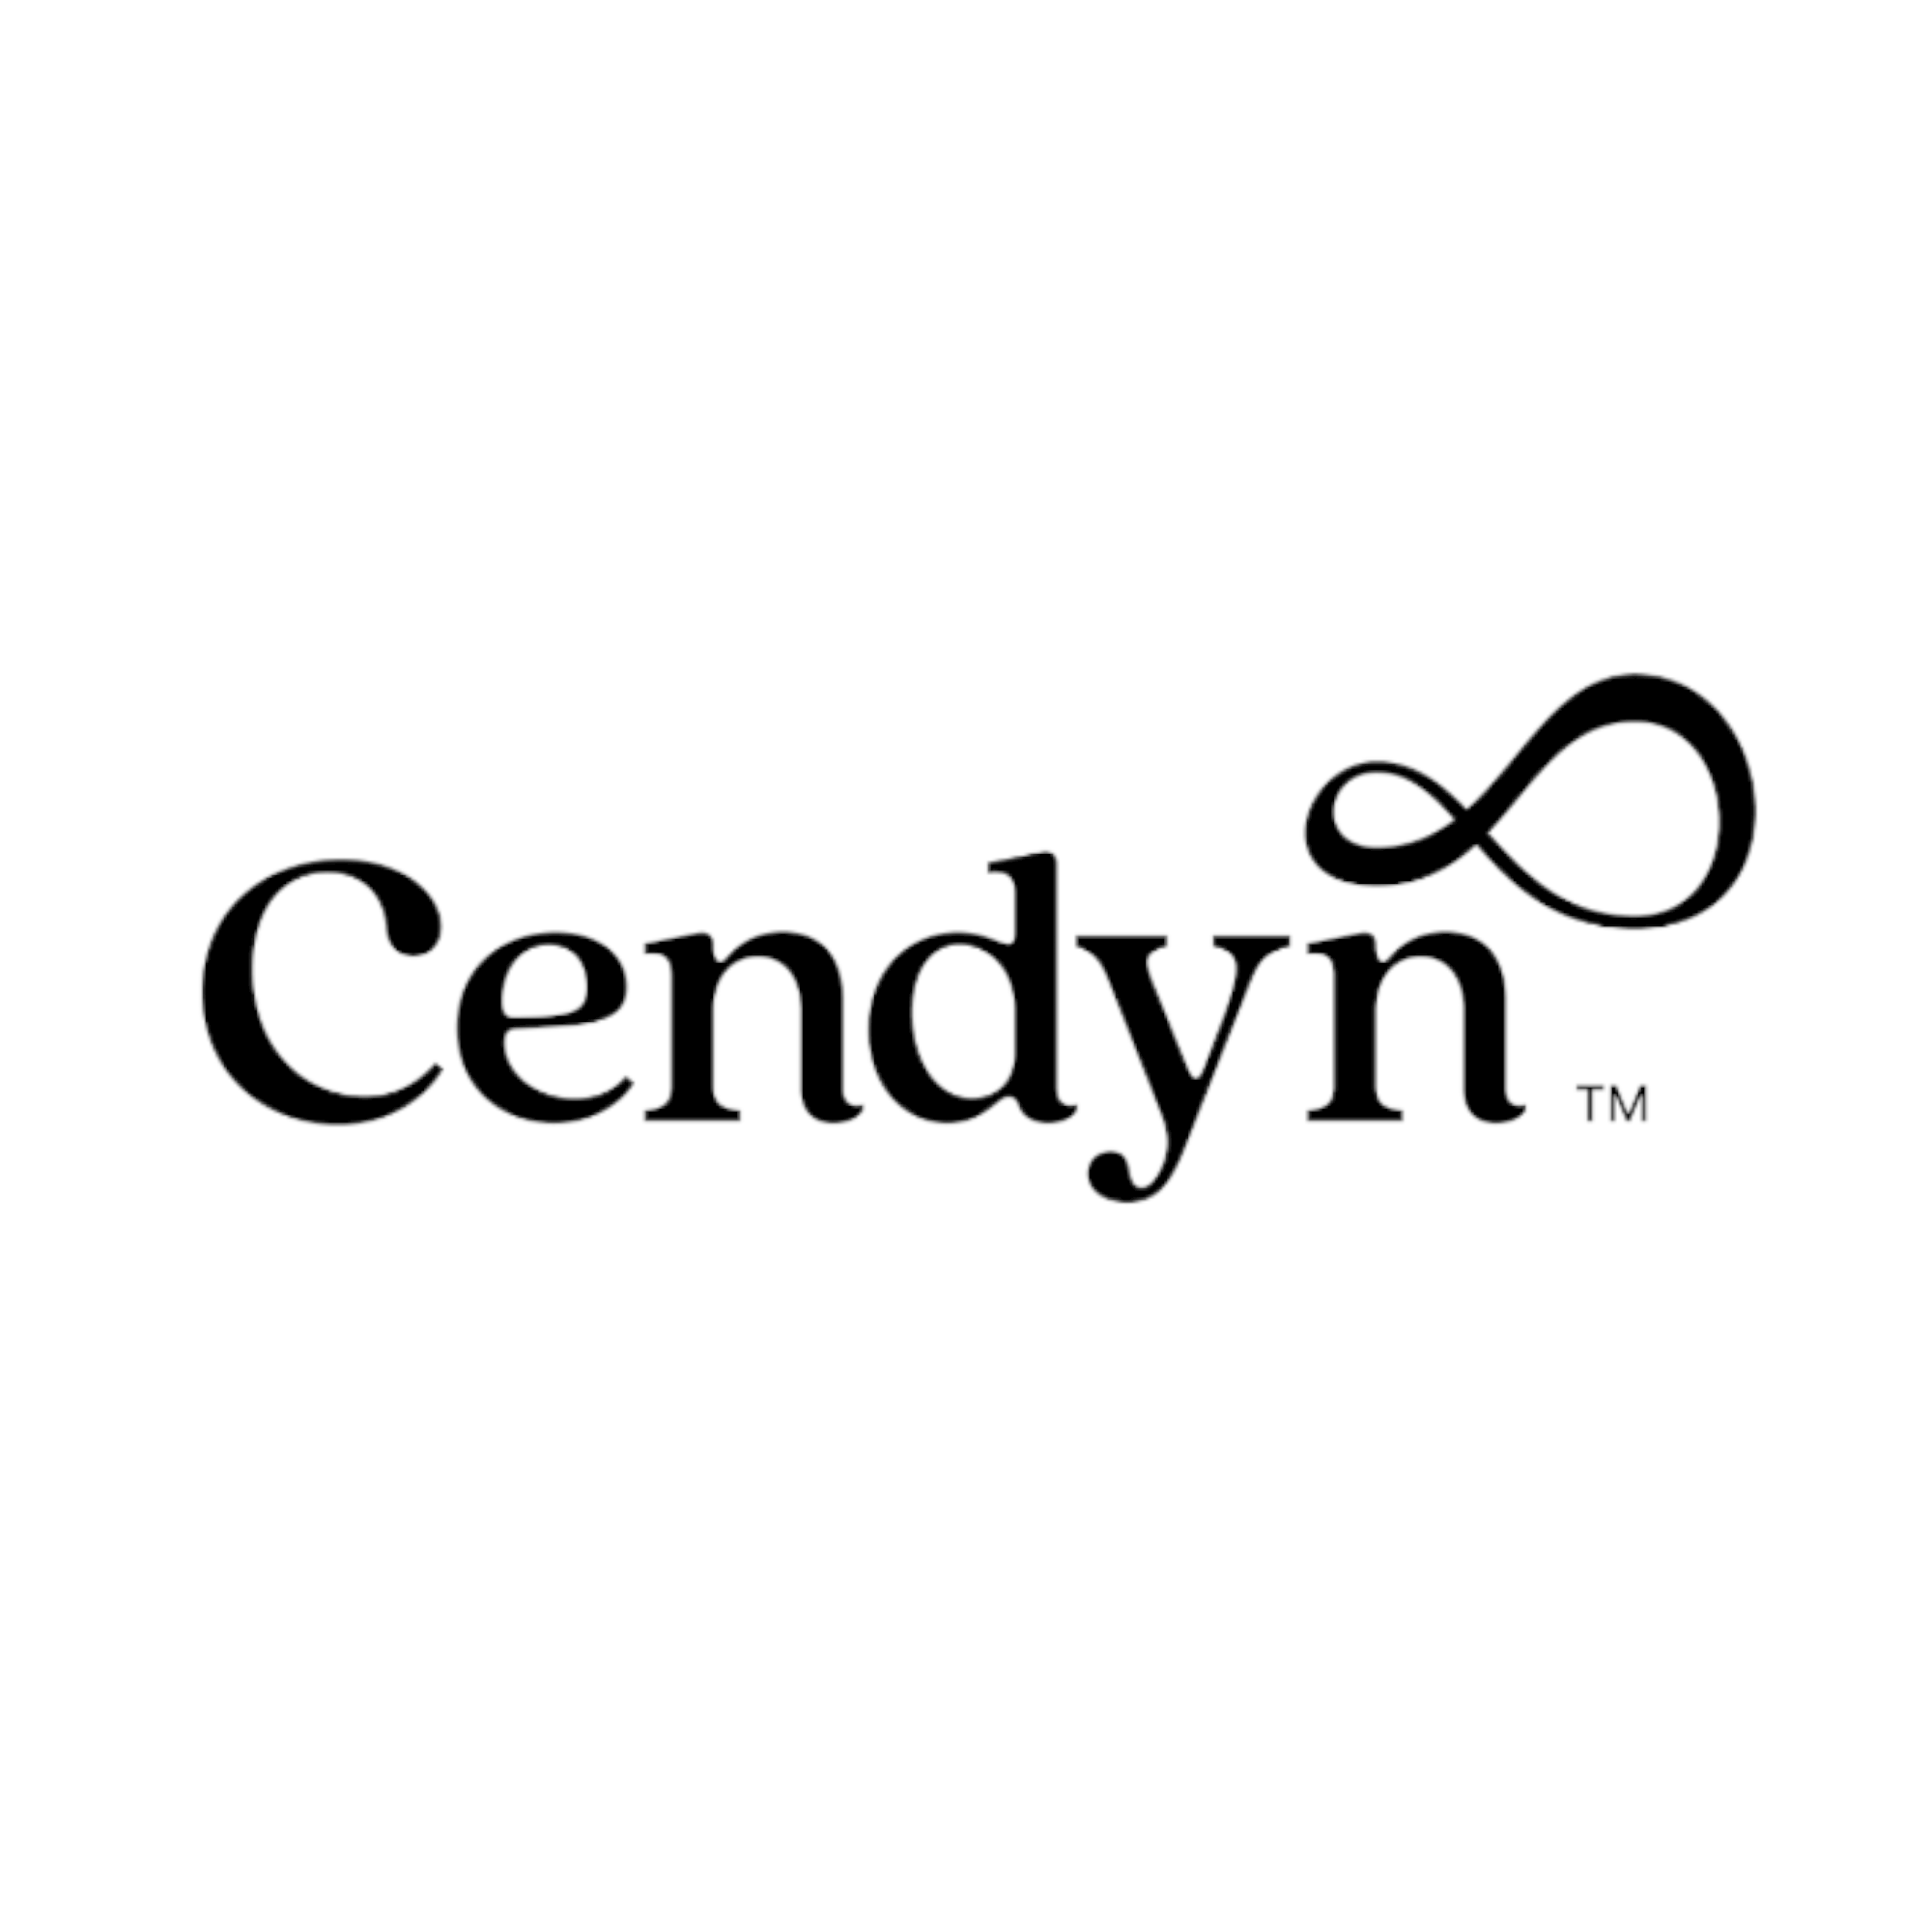 new cendyn logo for revenue hub expert partner profile